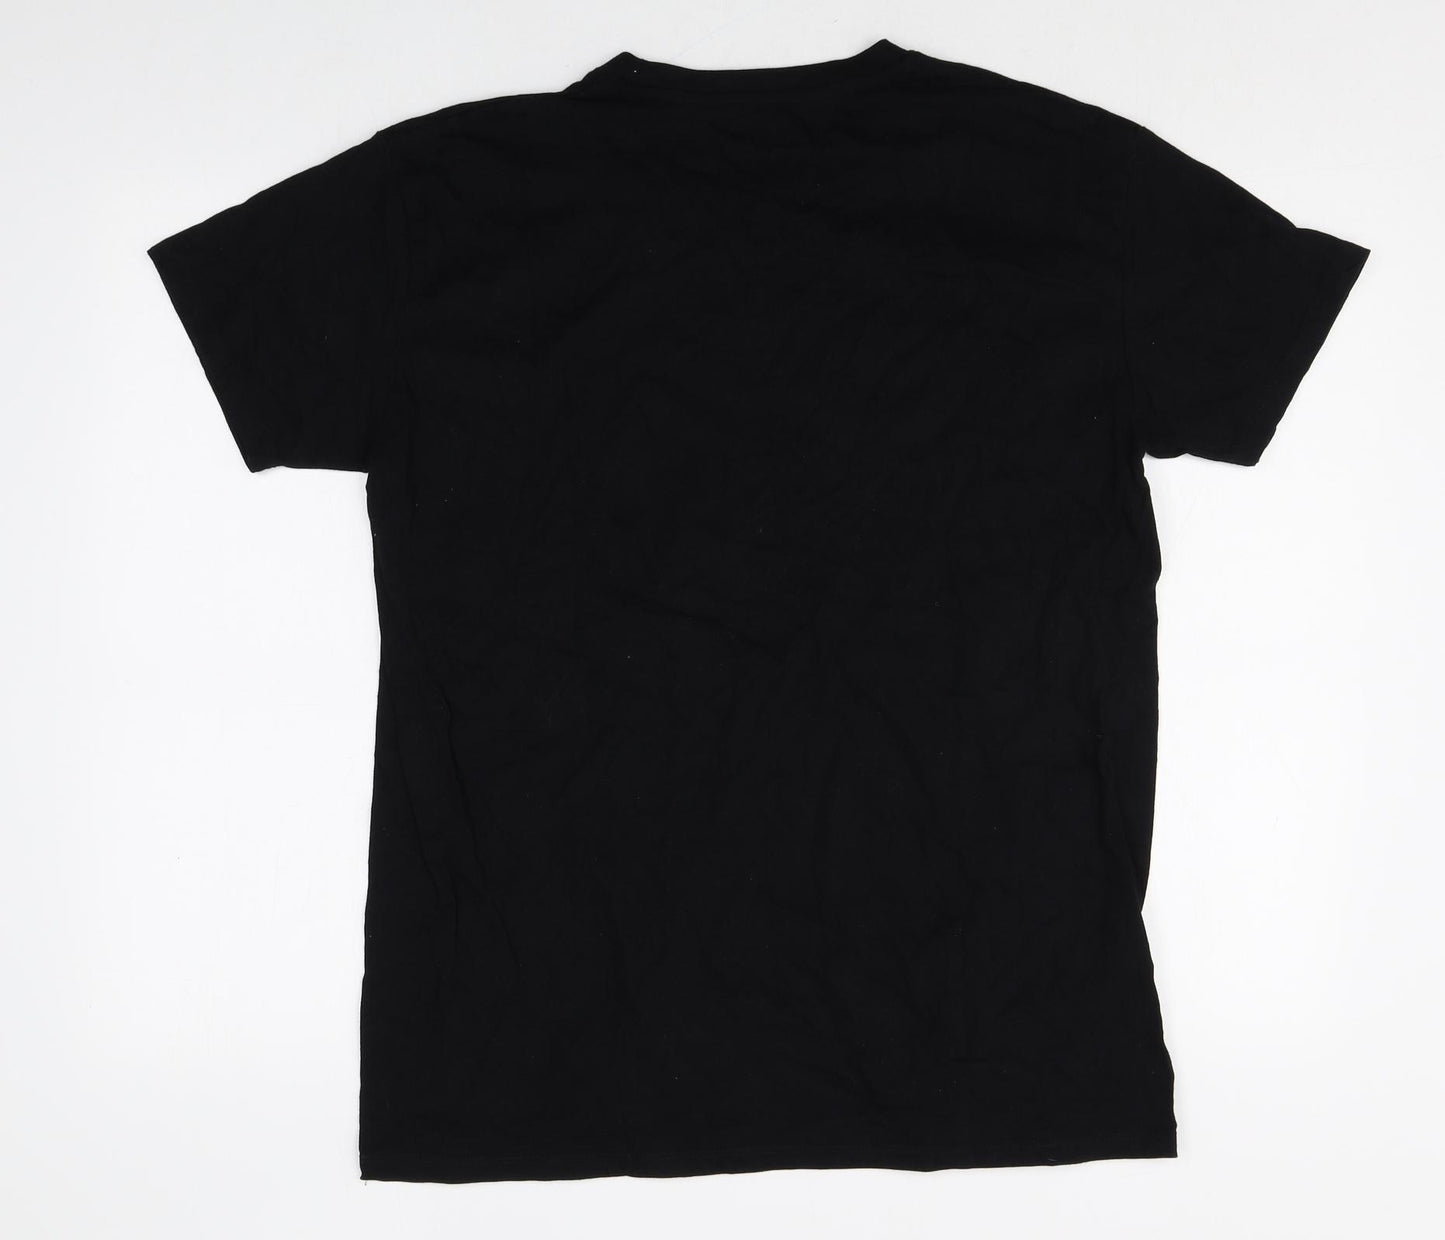 Backstage Rockshop Mens Black Cotton T-Shirt Size L Round Neck - Arion